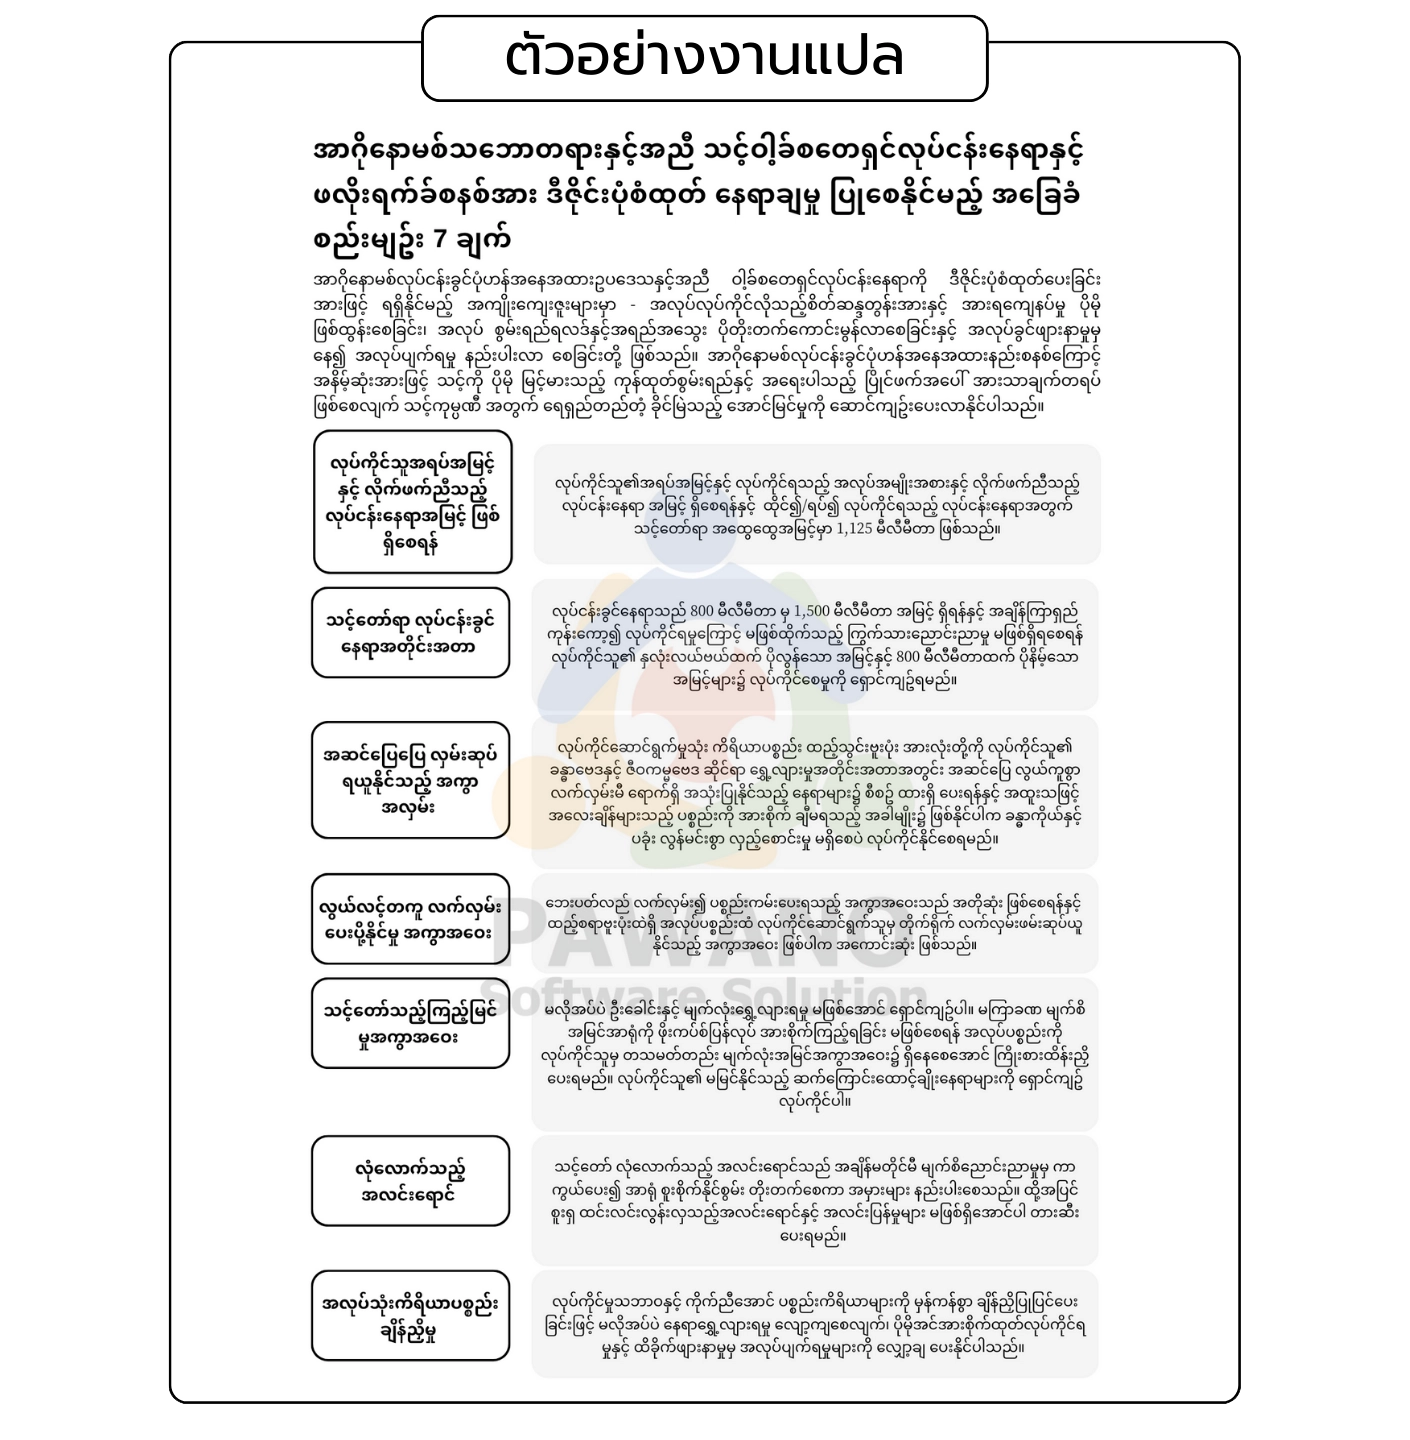 ตัวอย่างงานแปลคู่มือ ภาษาพม่า